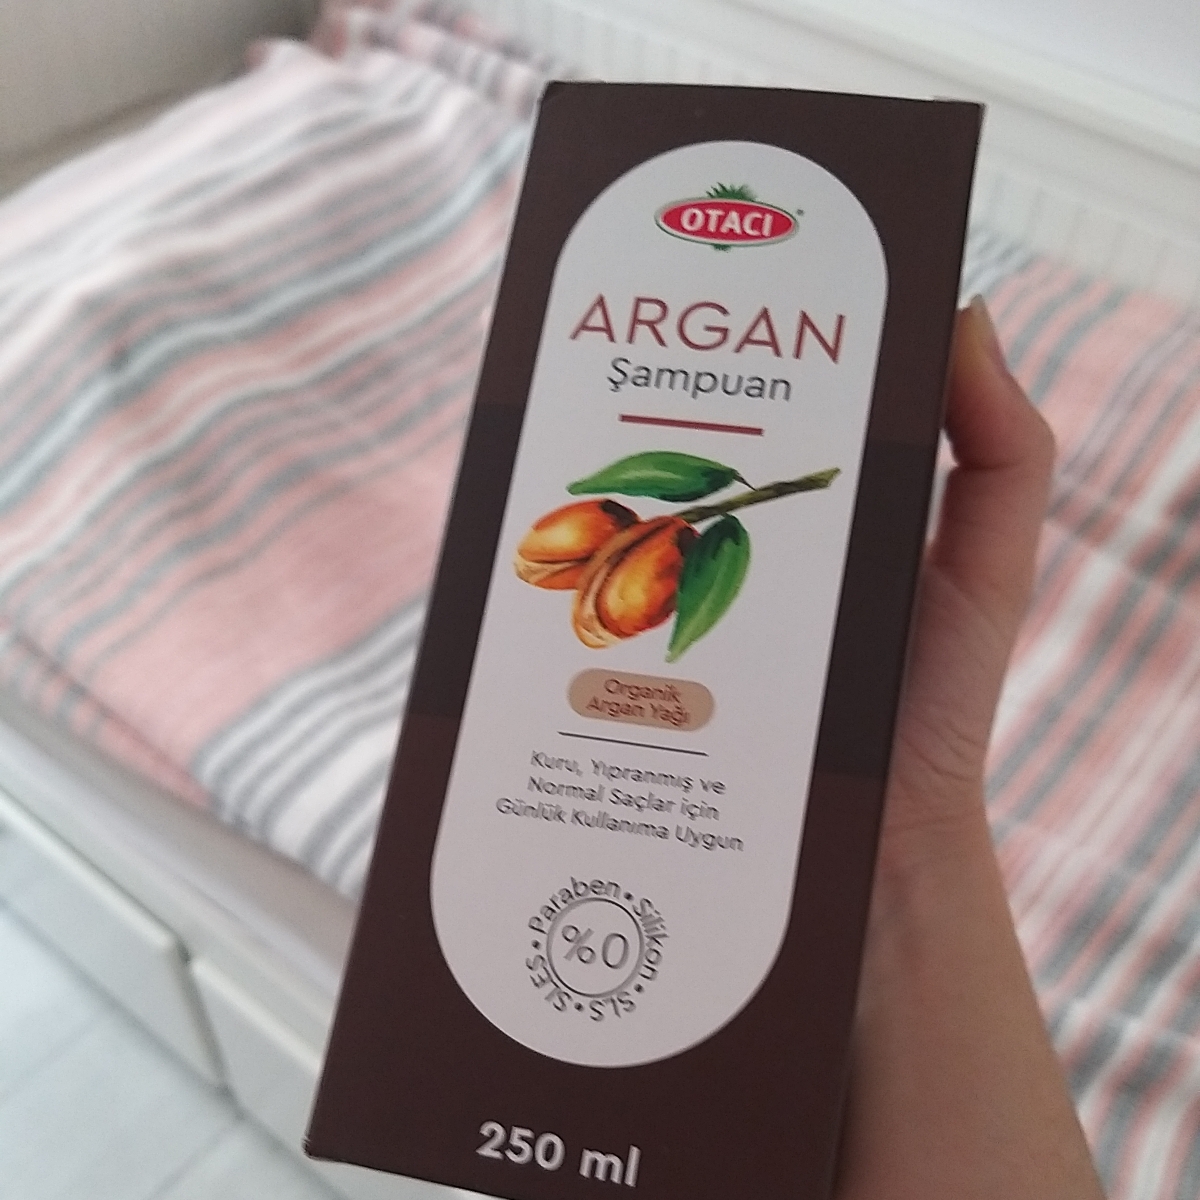 Otacı Argan şampuan Review | abillion